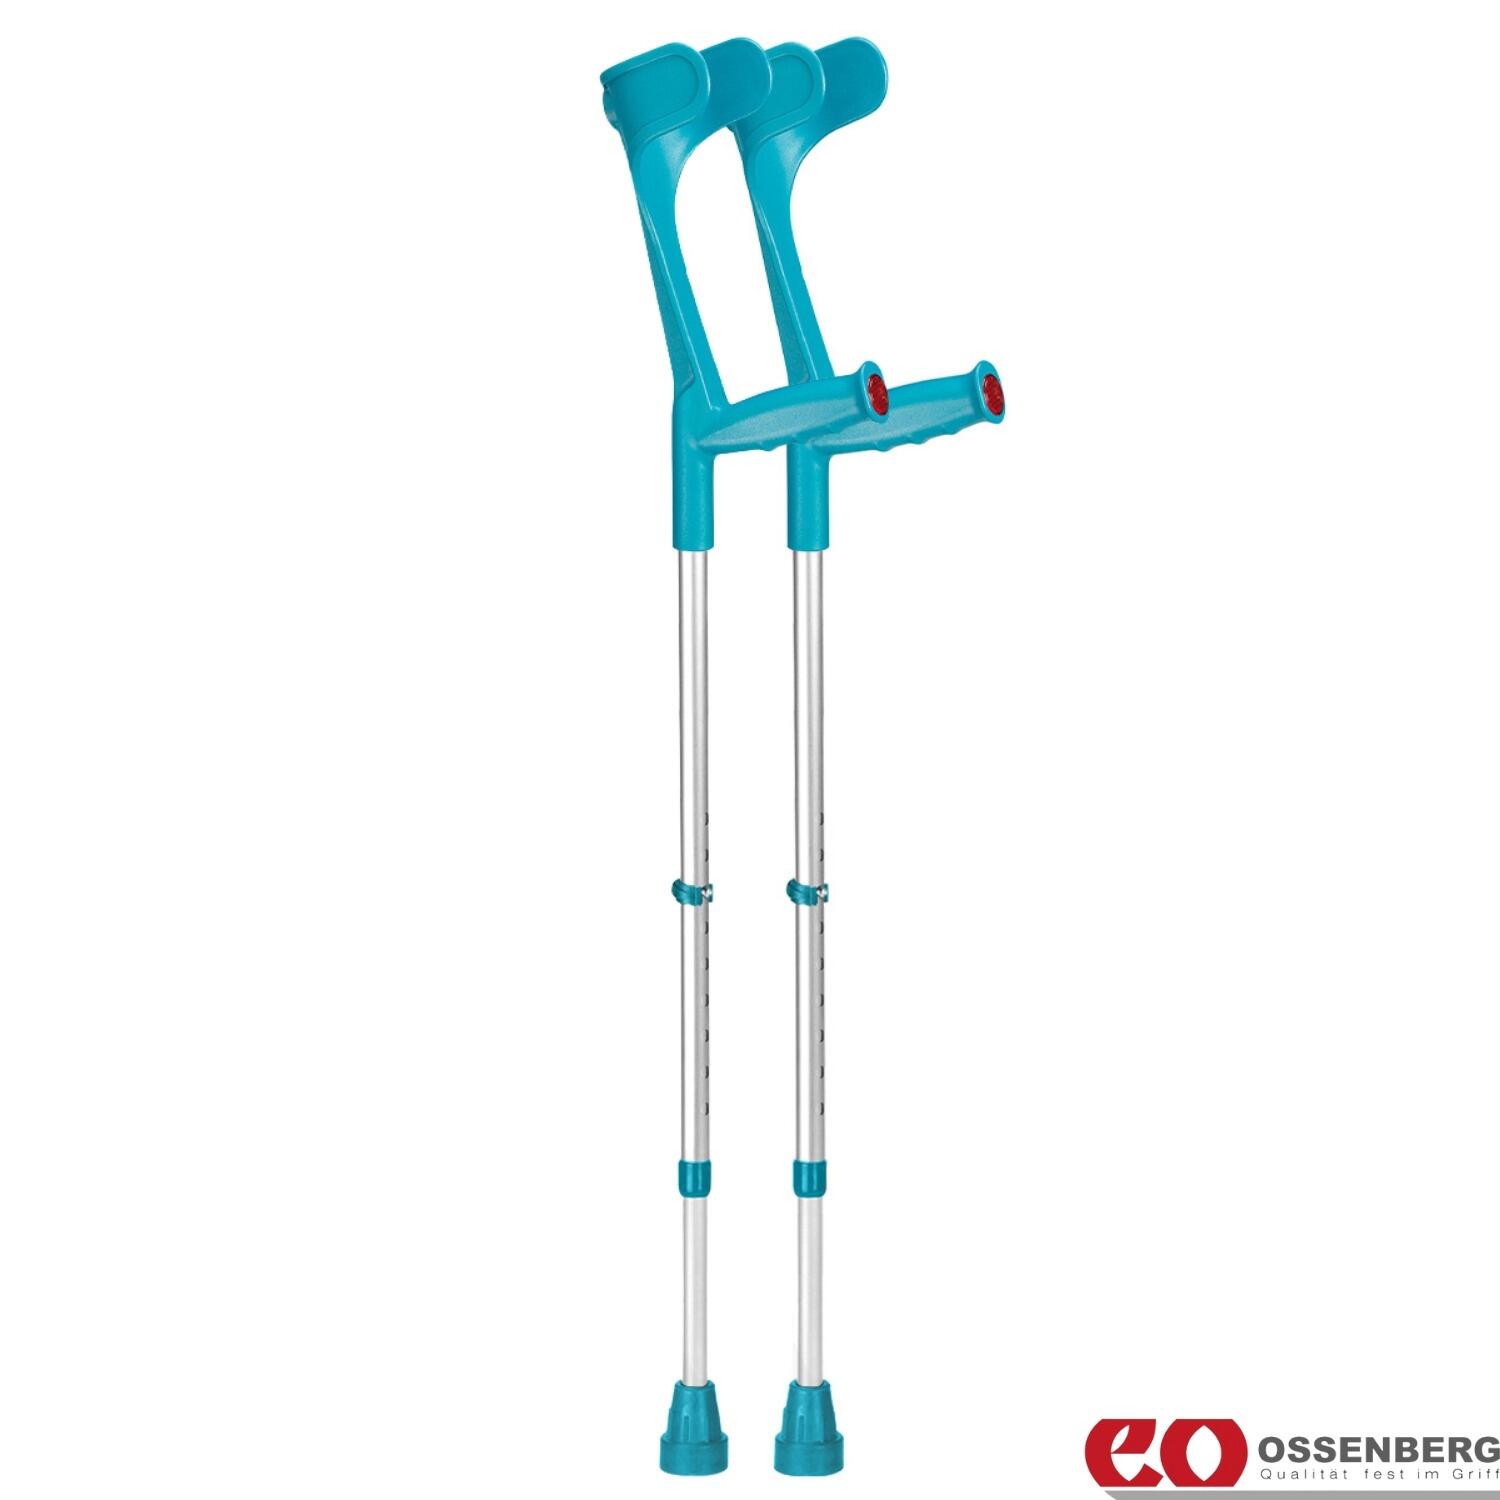 Ossenberg-Classic-Open-Cuff-Crutches-Turquoise